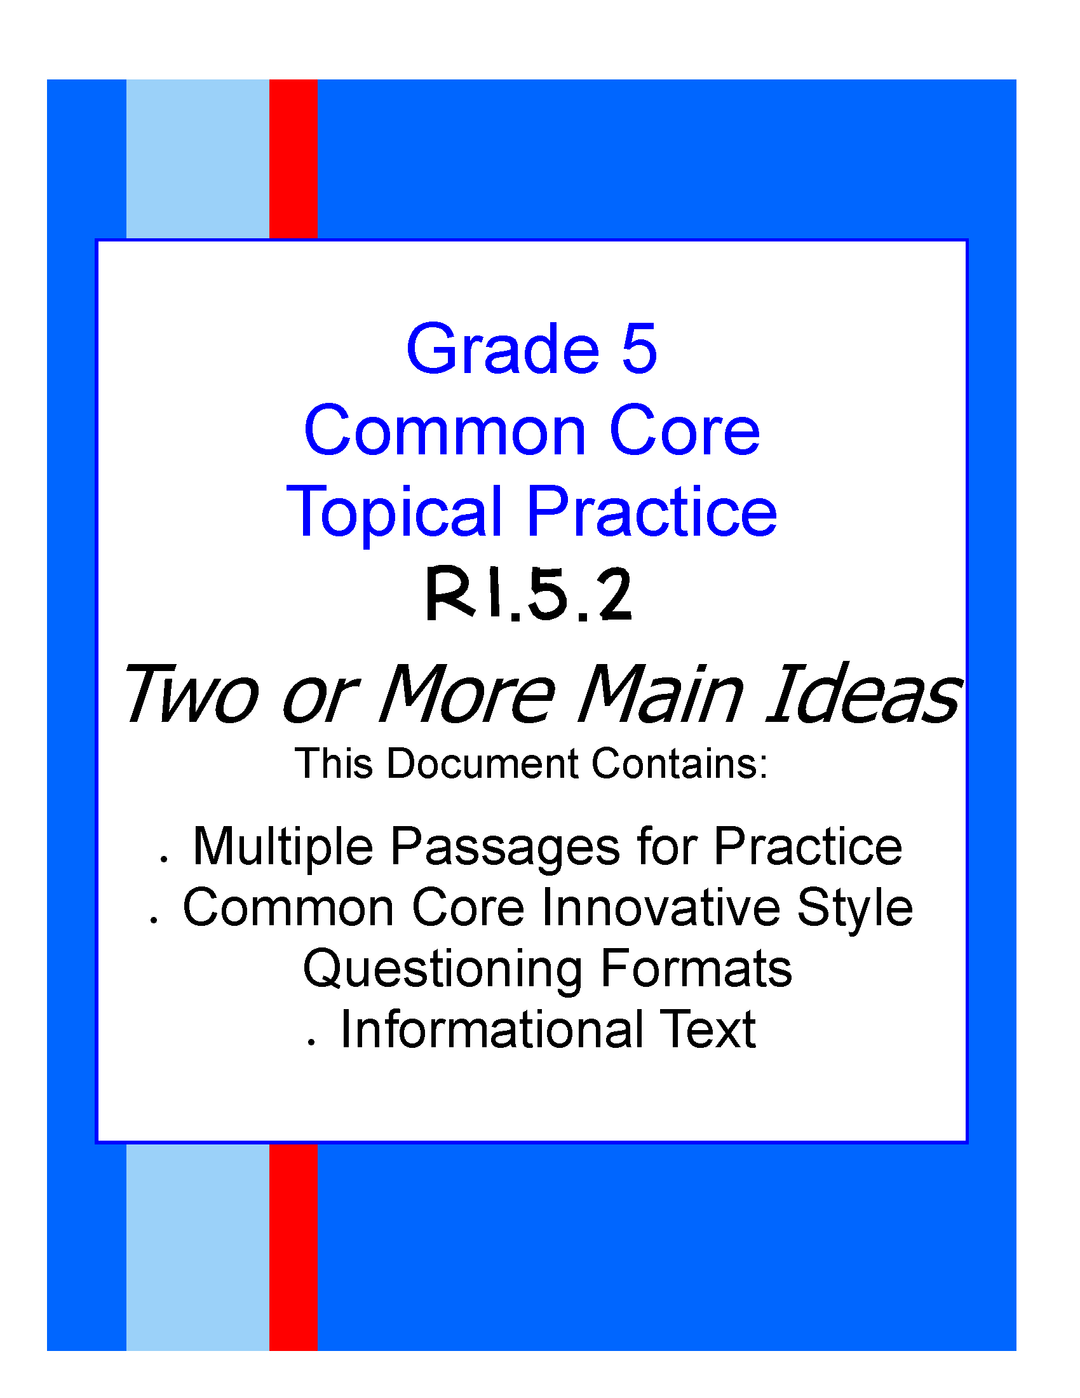 Common Core Grade 5: Two or More Main Ideas RI.5.2 Practice